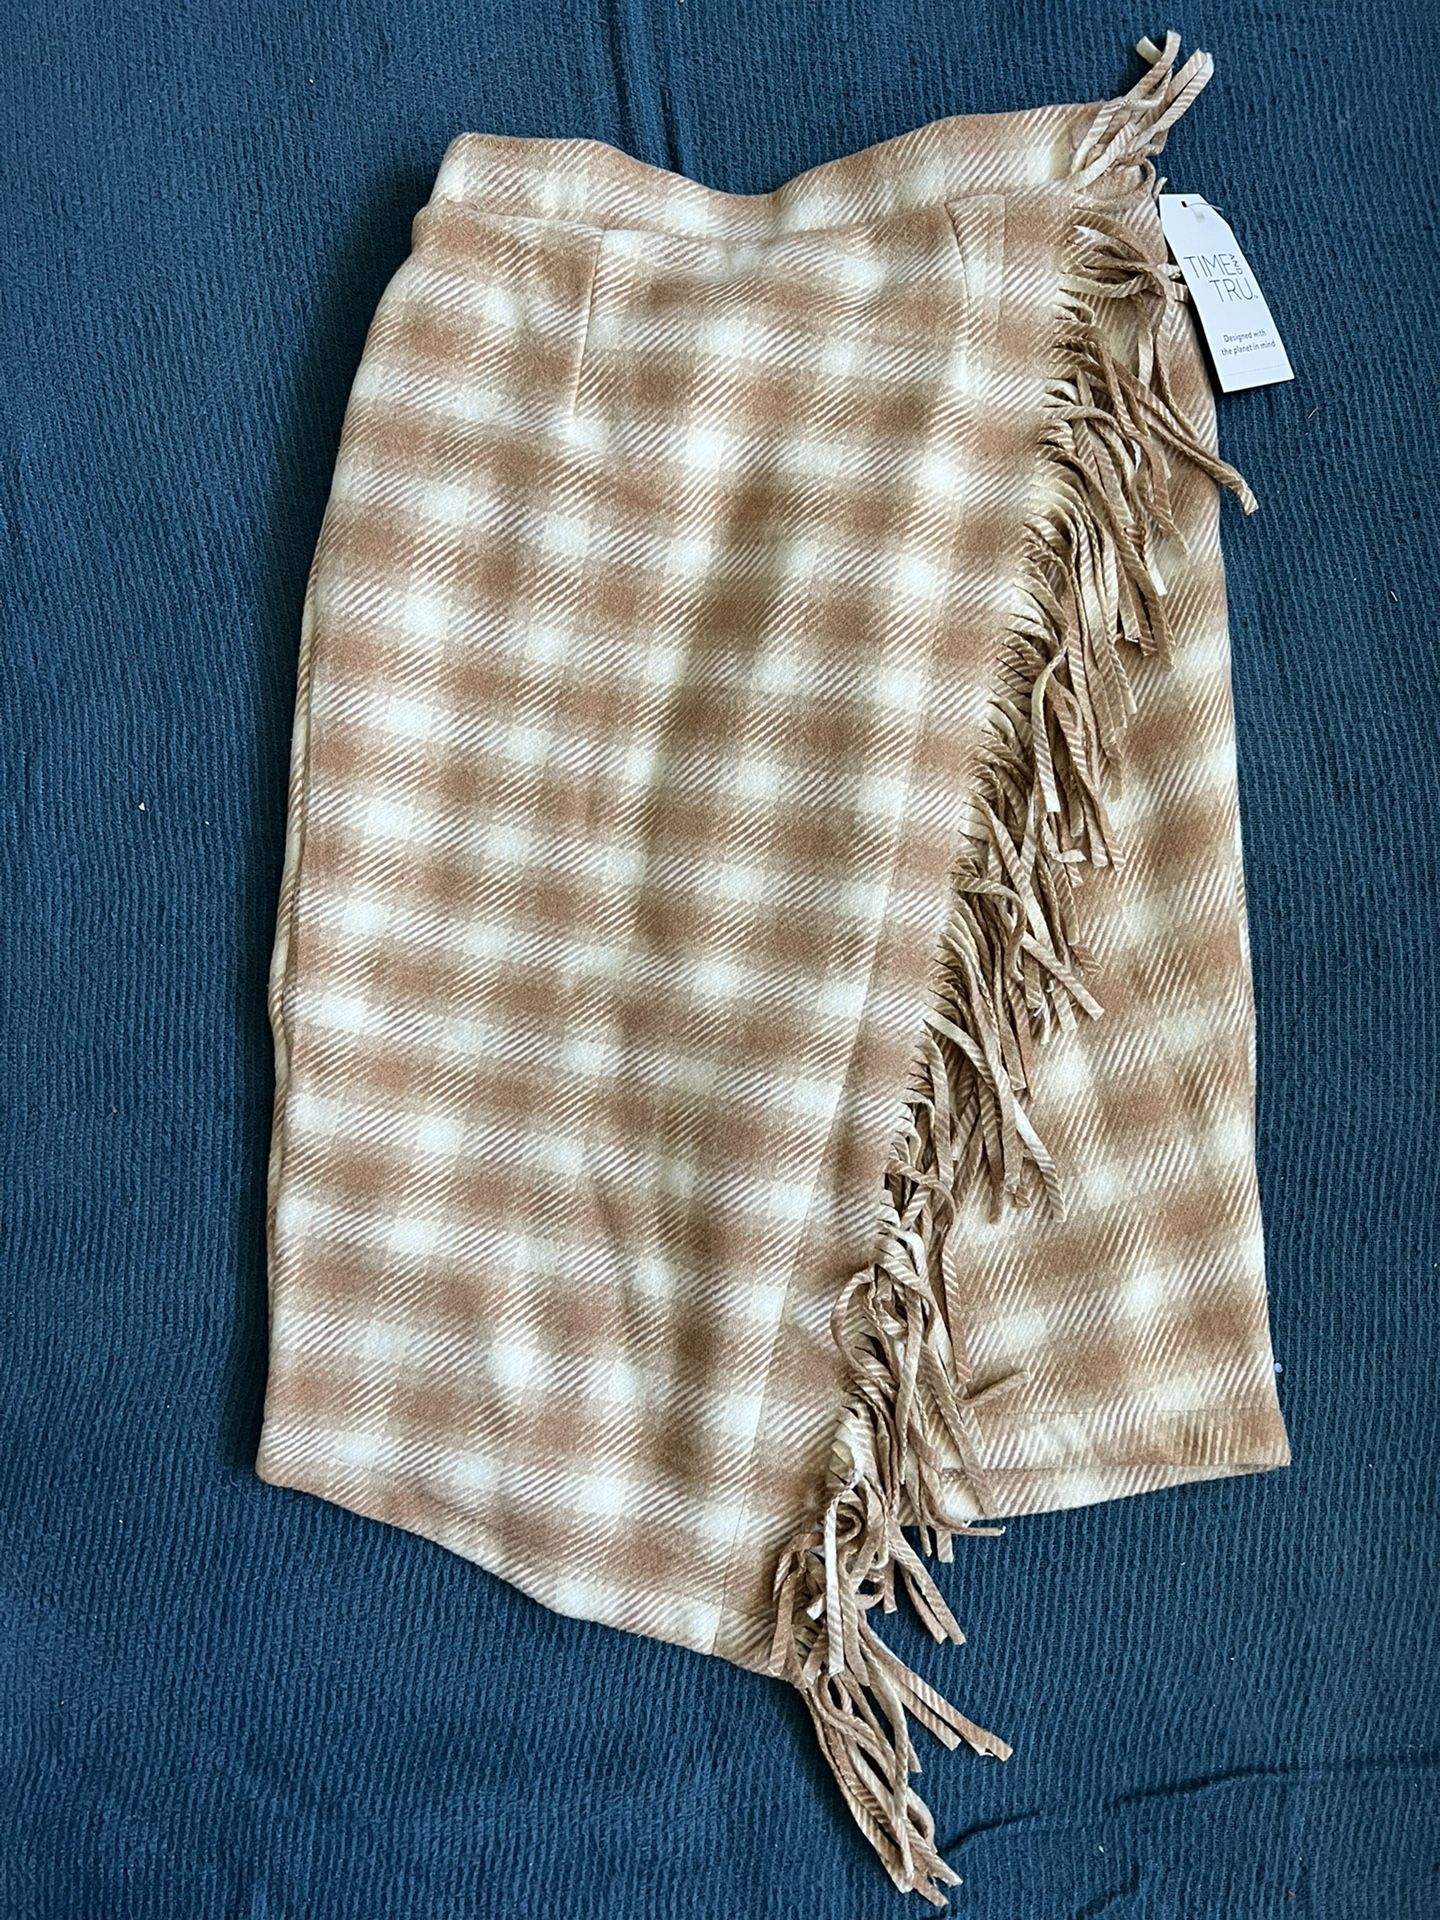 NWT Brown/White Fringe Skirt